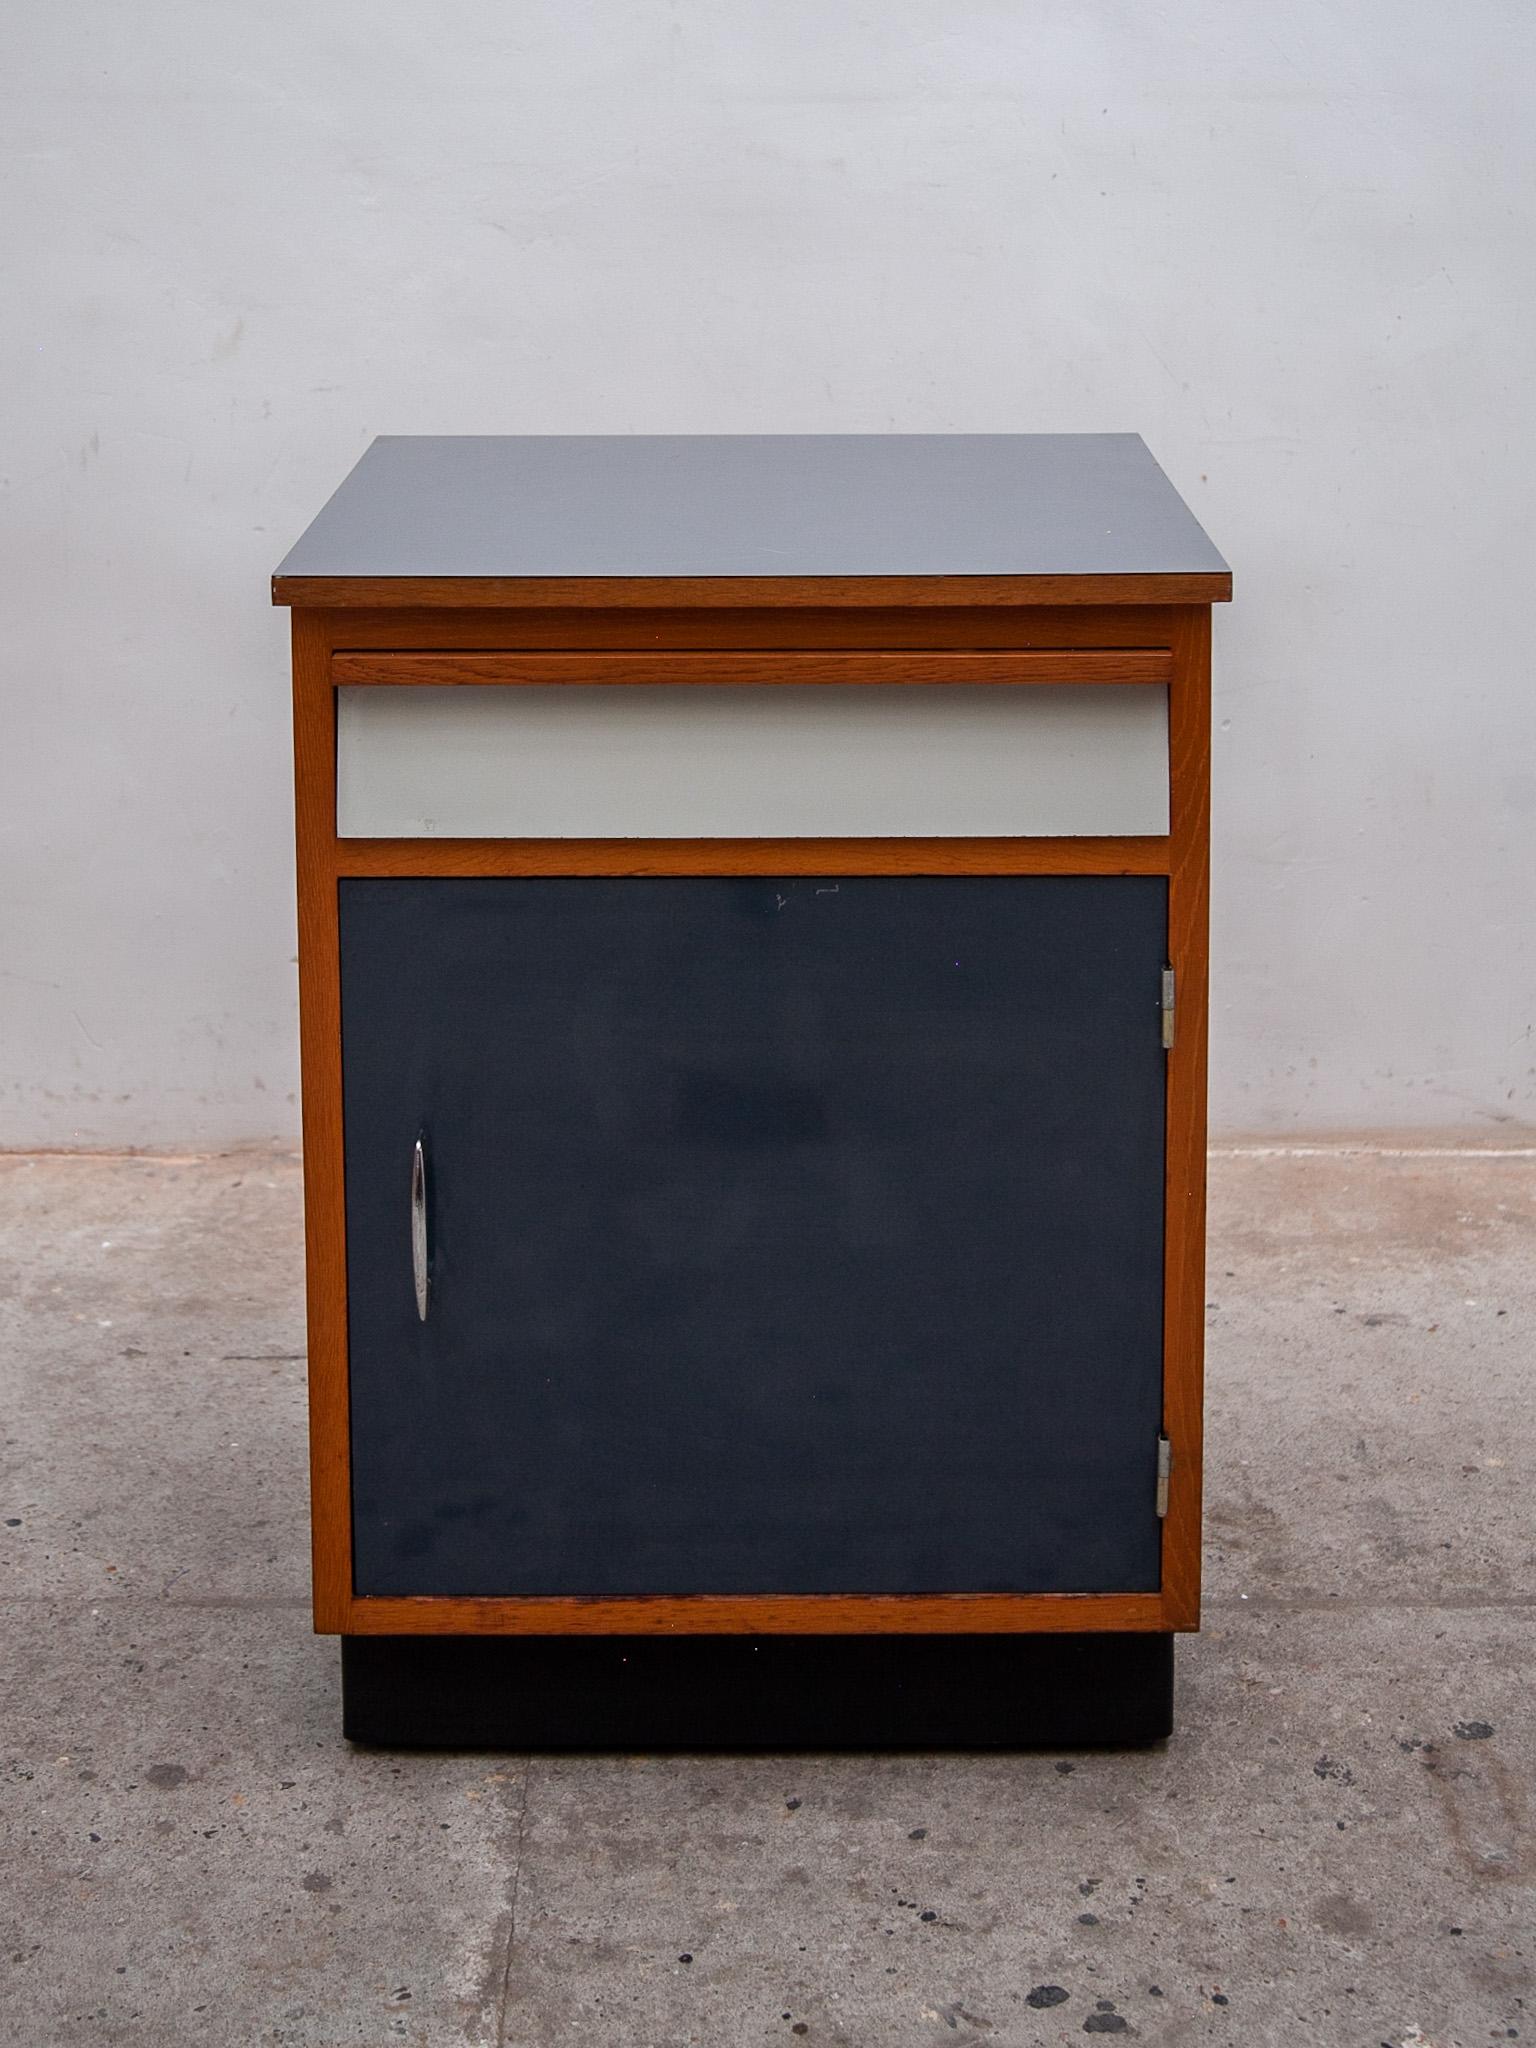 Seltenes kleines industrielles Sideboard mit einer Tür aus blauem Schichtstoff, einer Schublade aus weißem Schichtstoff und einer grauen Schichtstoffplatte. Die Konstruktion des Sideboards ist aus massiver Buche, entworfen von Tubax, Belgien 1958.